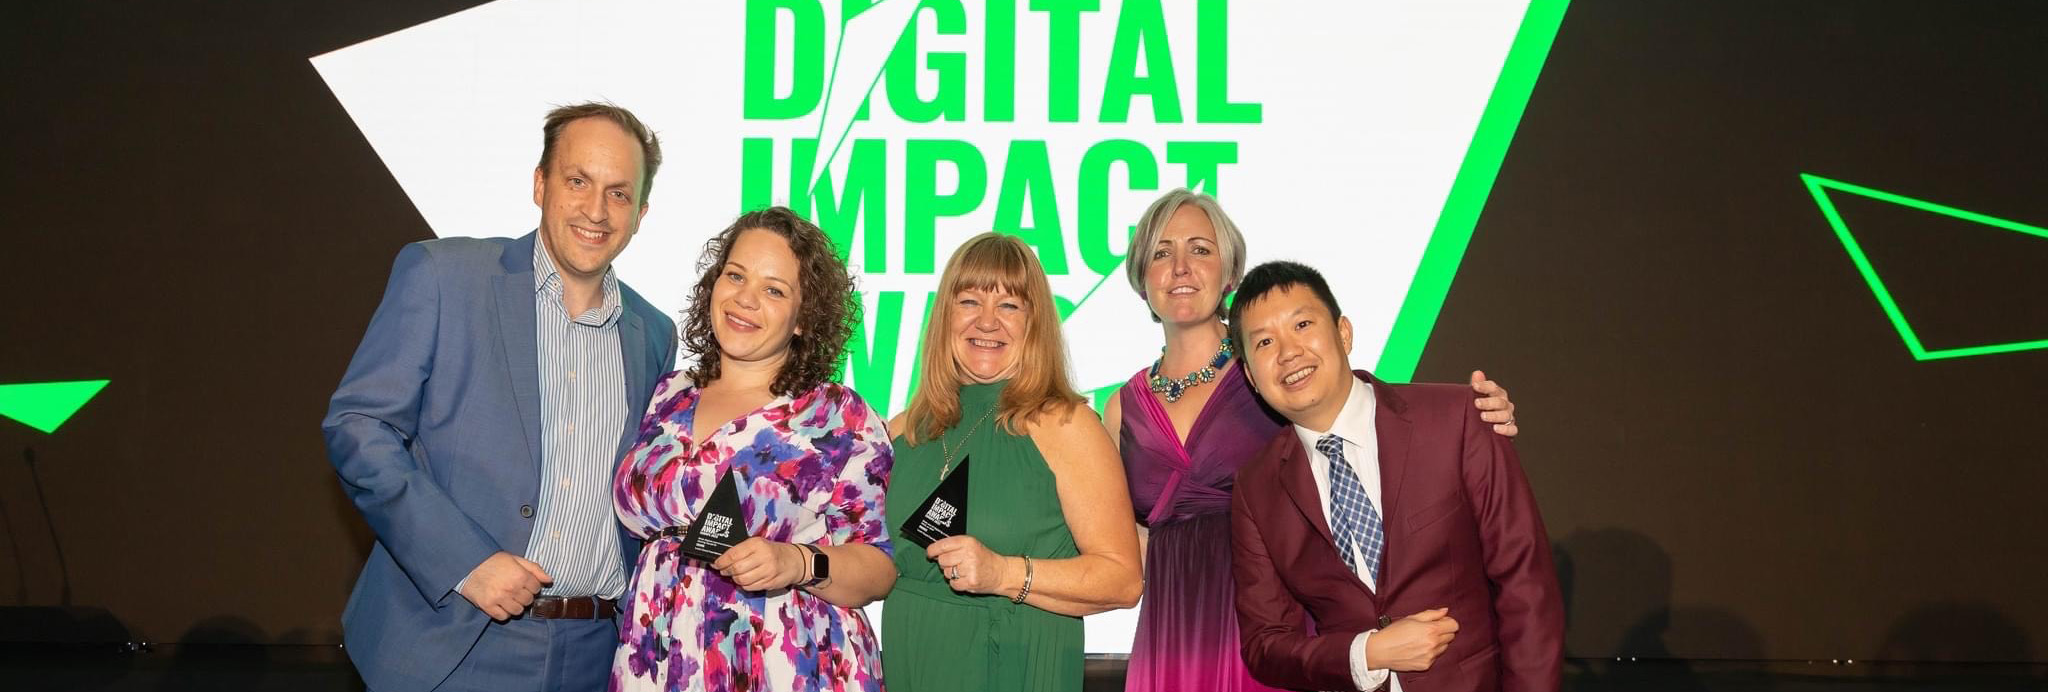 Digital Impact Awards London